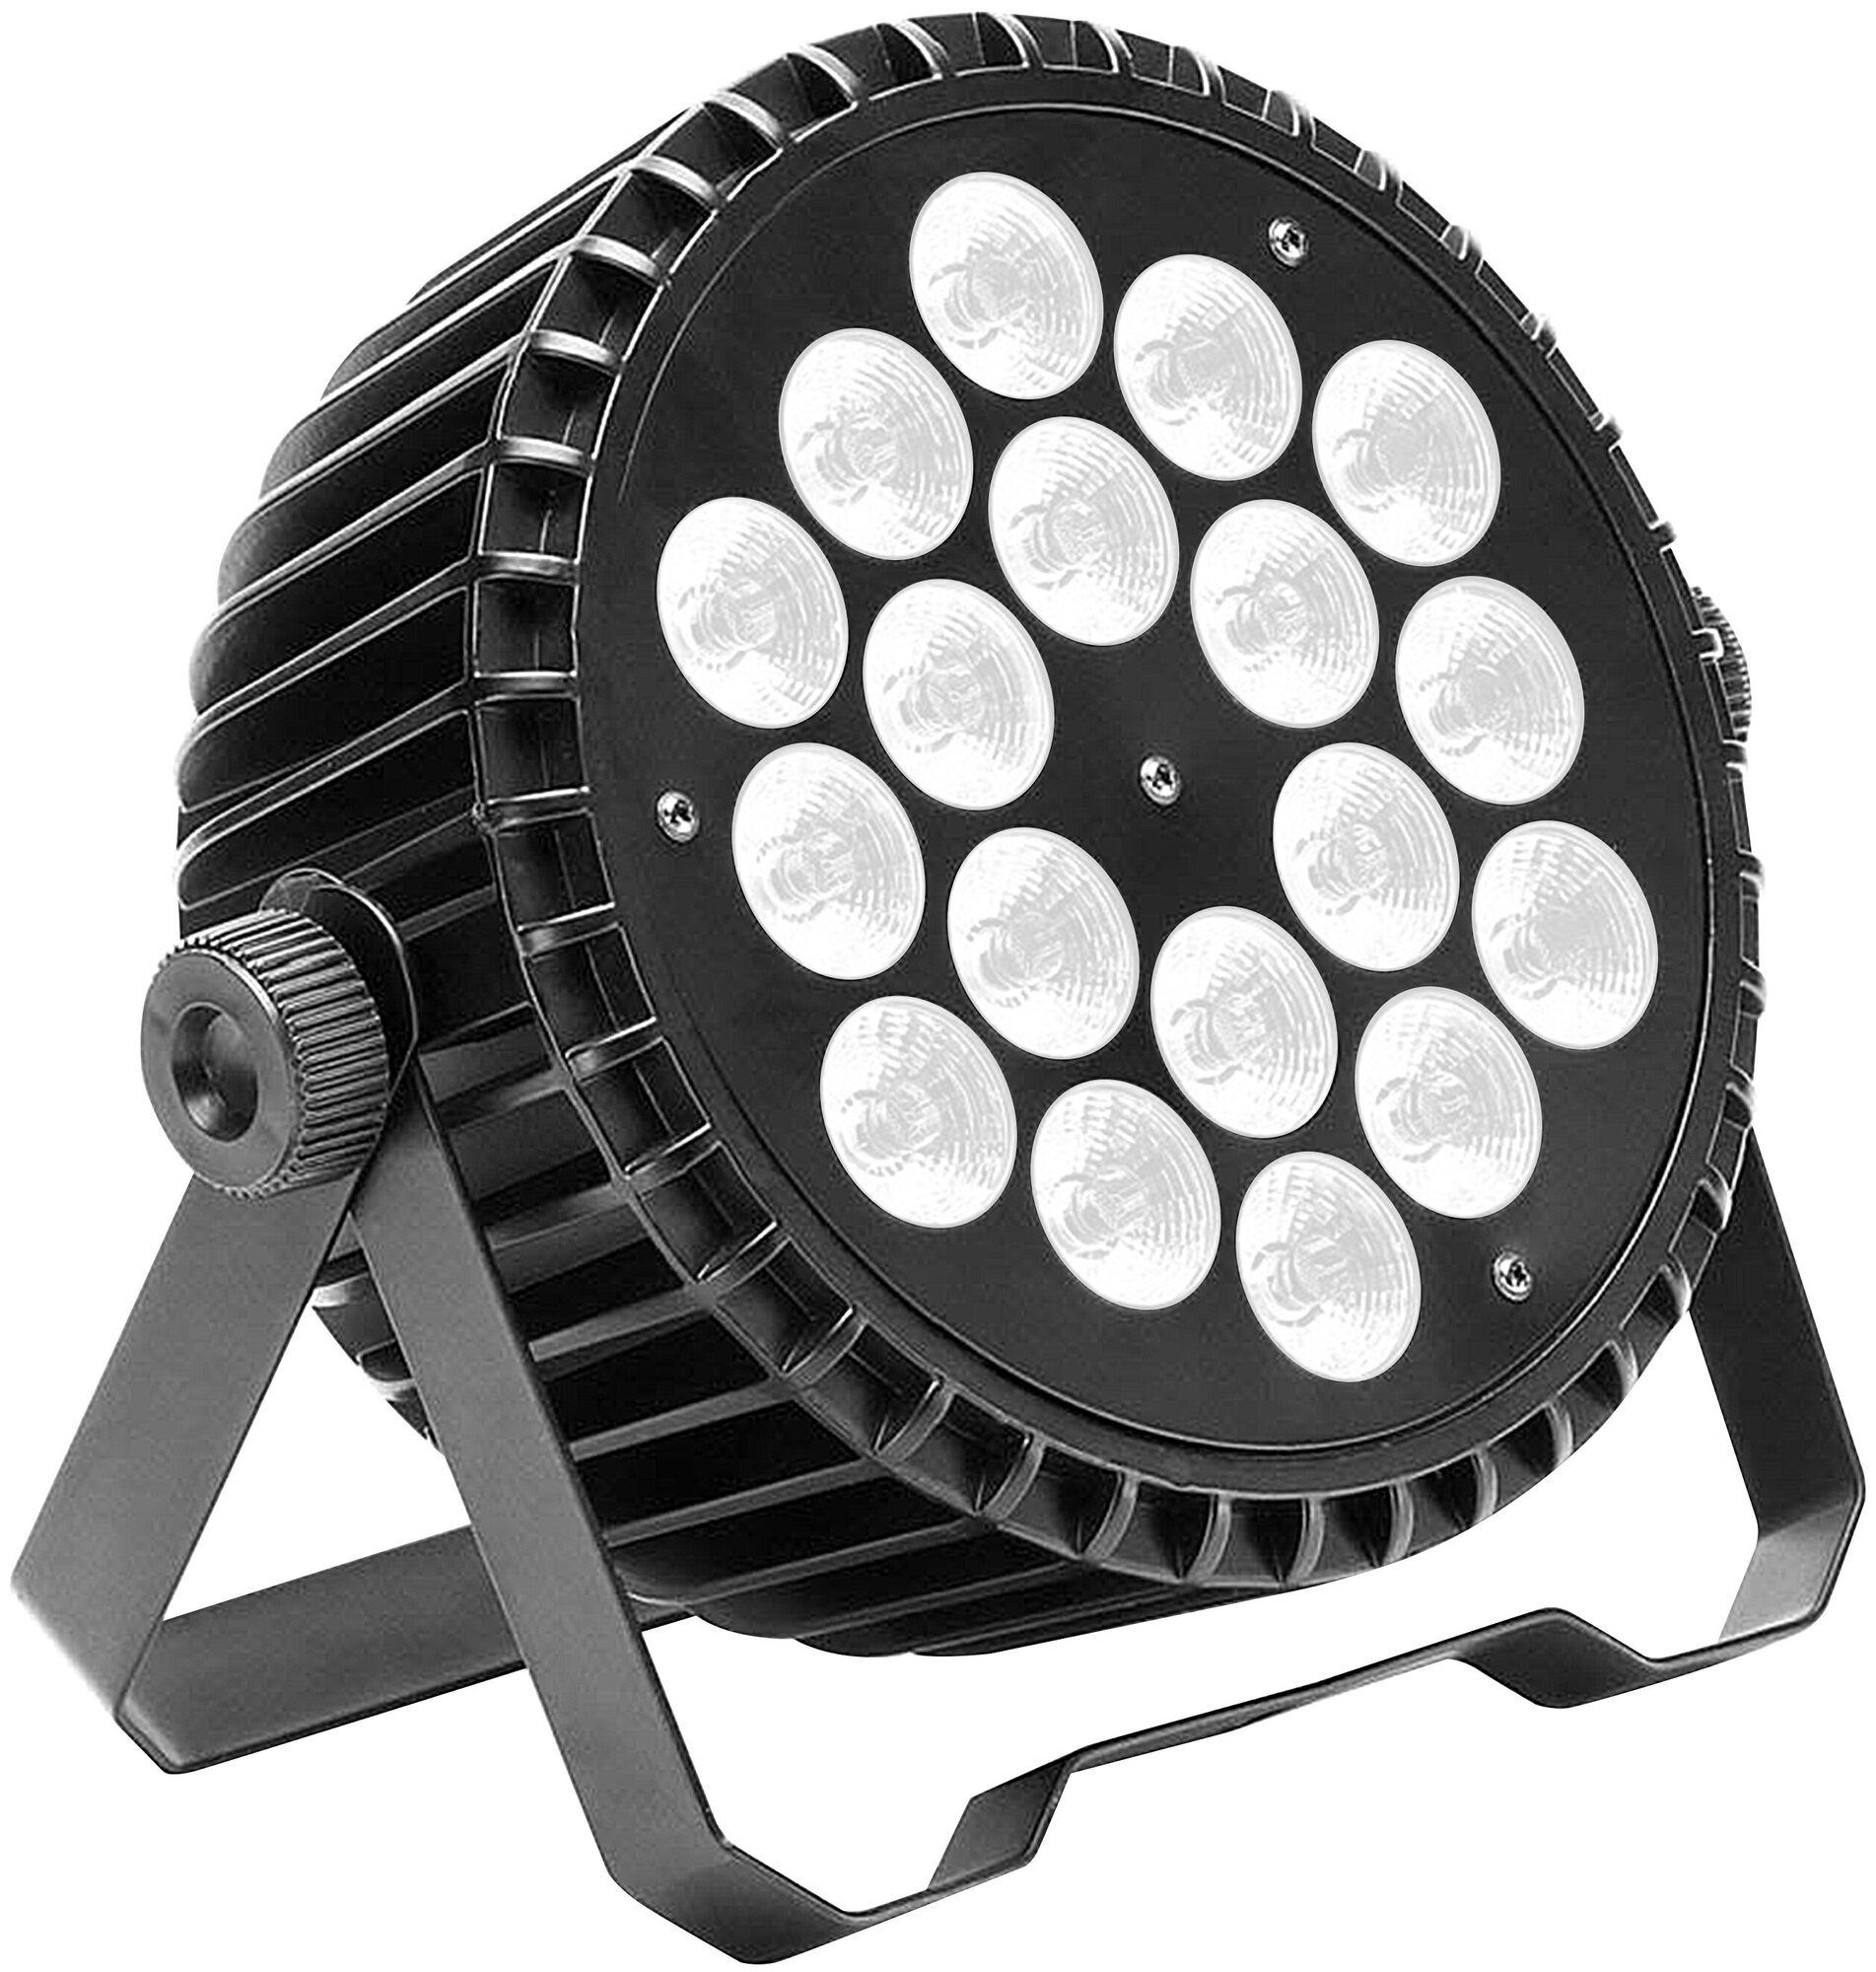 XLine Light LED PAR 1815 Светодиодный прибор. Источник света: 18х15 Вт RGBWA светодиодов